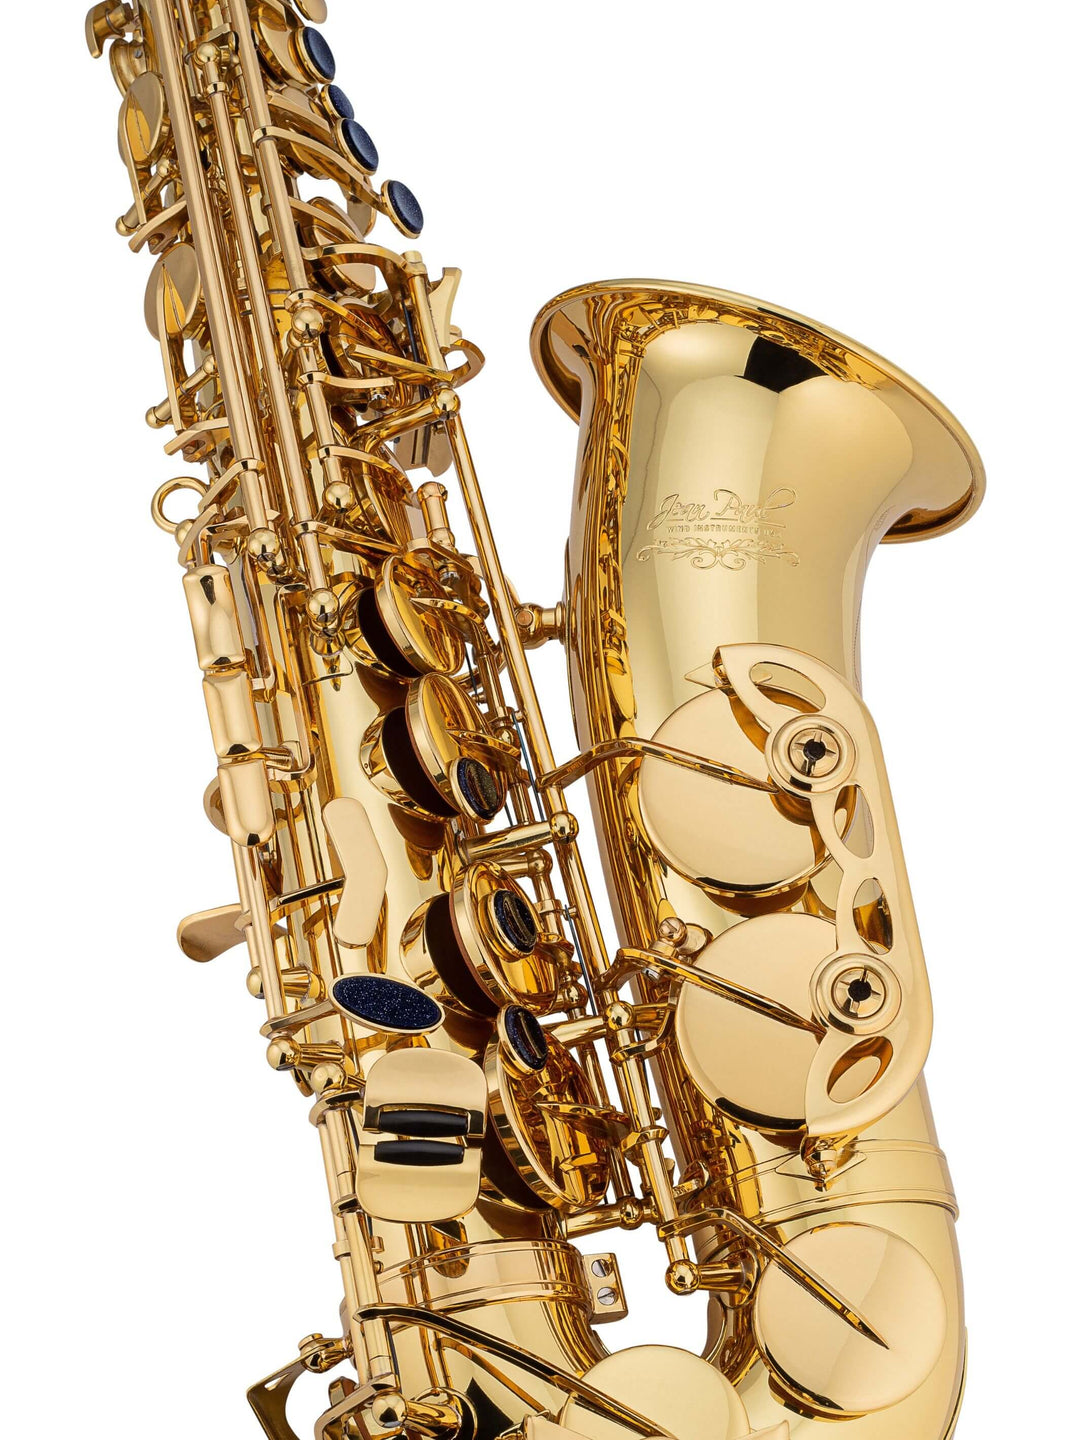 Top 12 Best Alto Saxophones